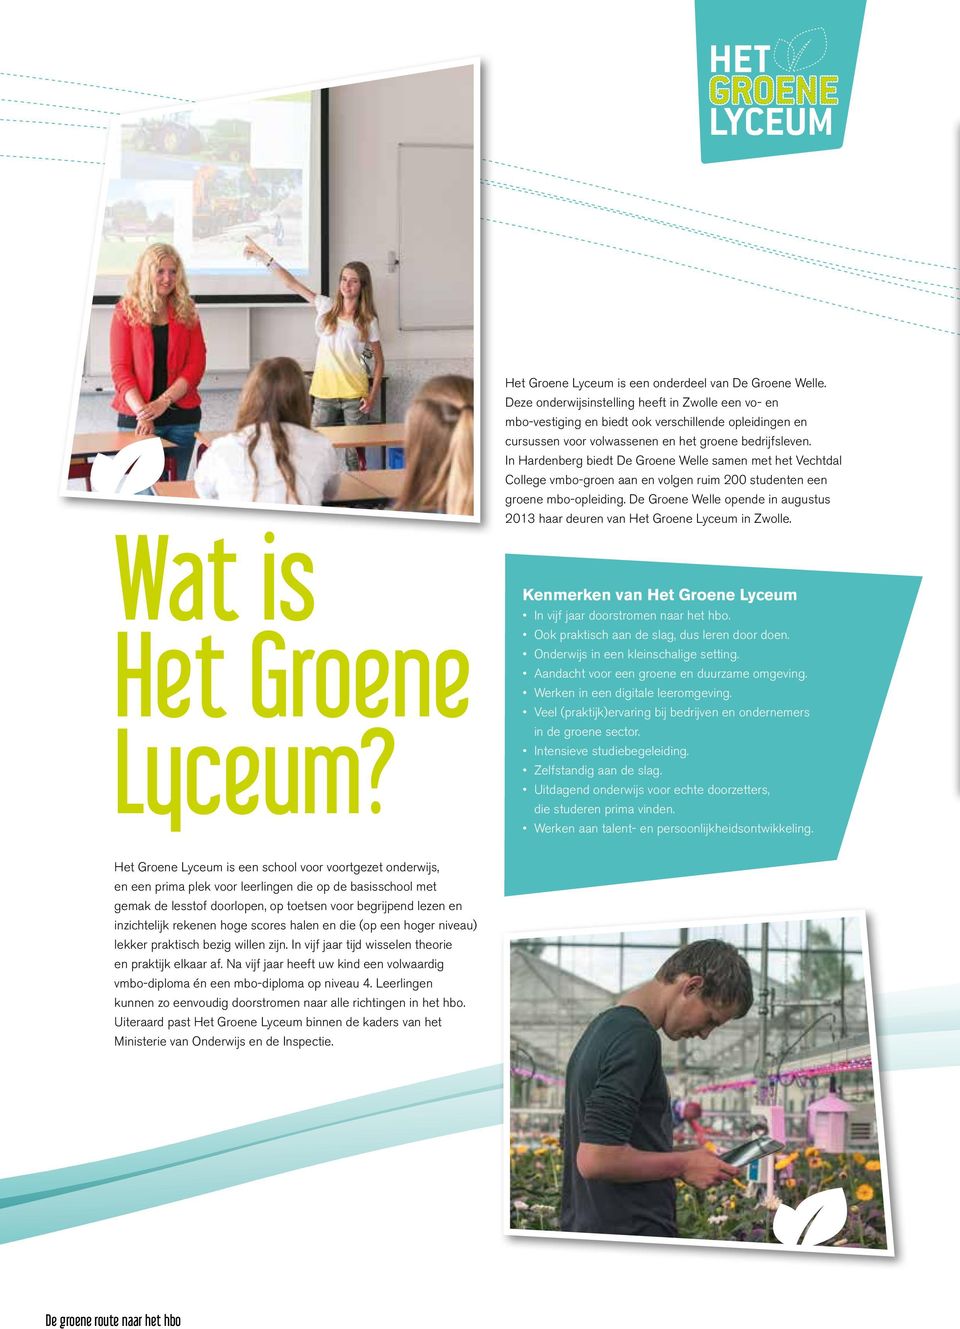 In Hardenberg biedt De Groene Welle samen met het Vechtdal College vmbo-groen aan en volgen ruim 200 studenten een groene mbo-opleiding.